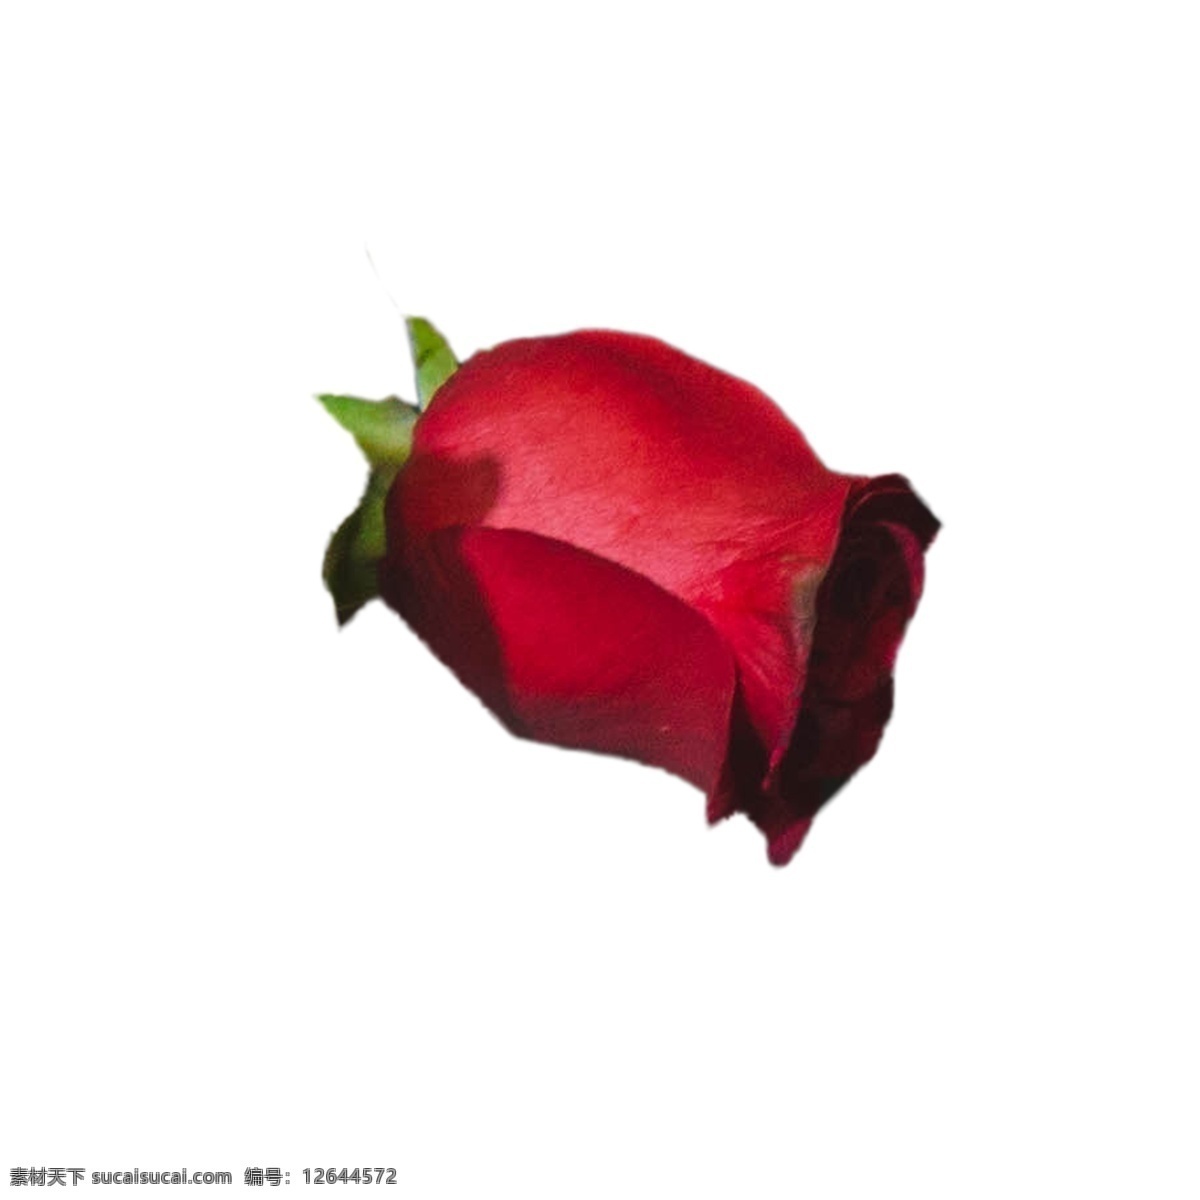 盛开 红色 玫瑰 玫瑰花 红色花朵 鲜花 红色玫瑰 卡通插图 创意卡通下载 插图 png图下载